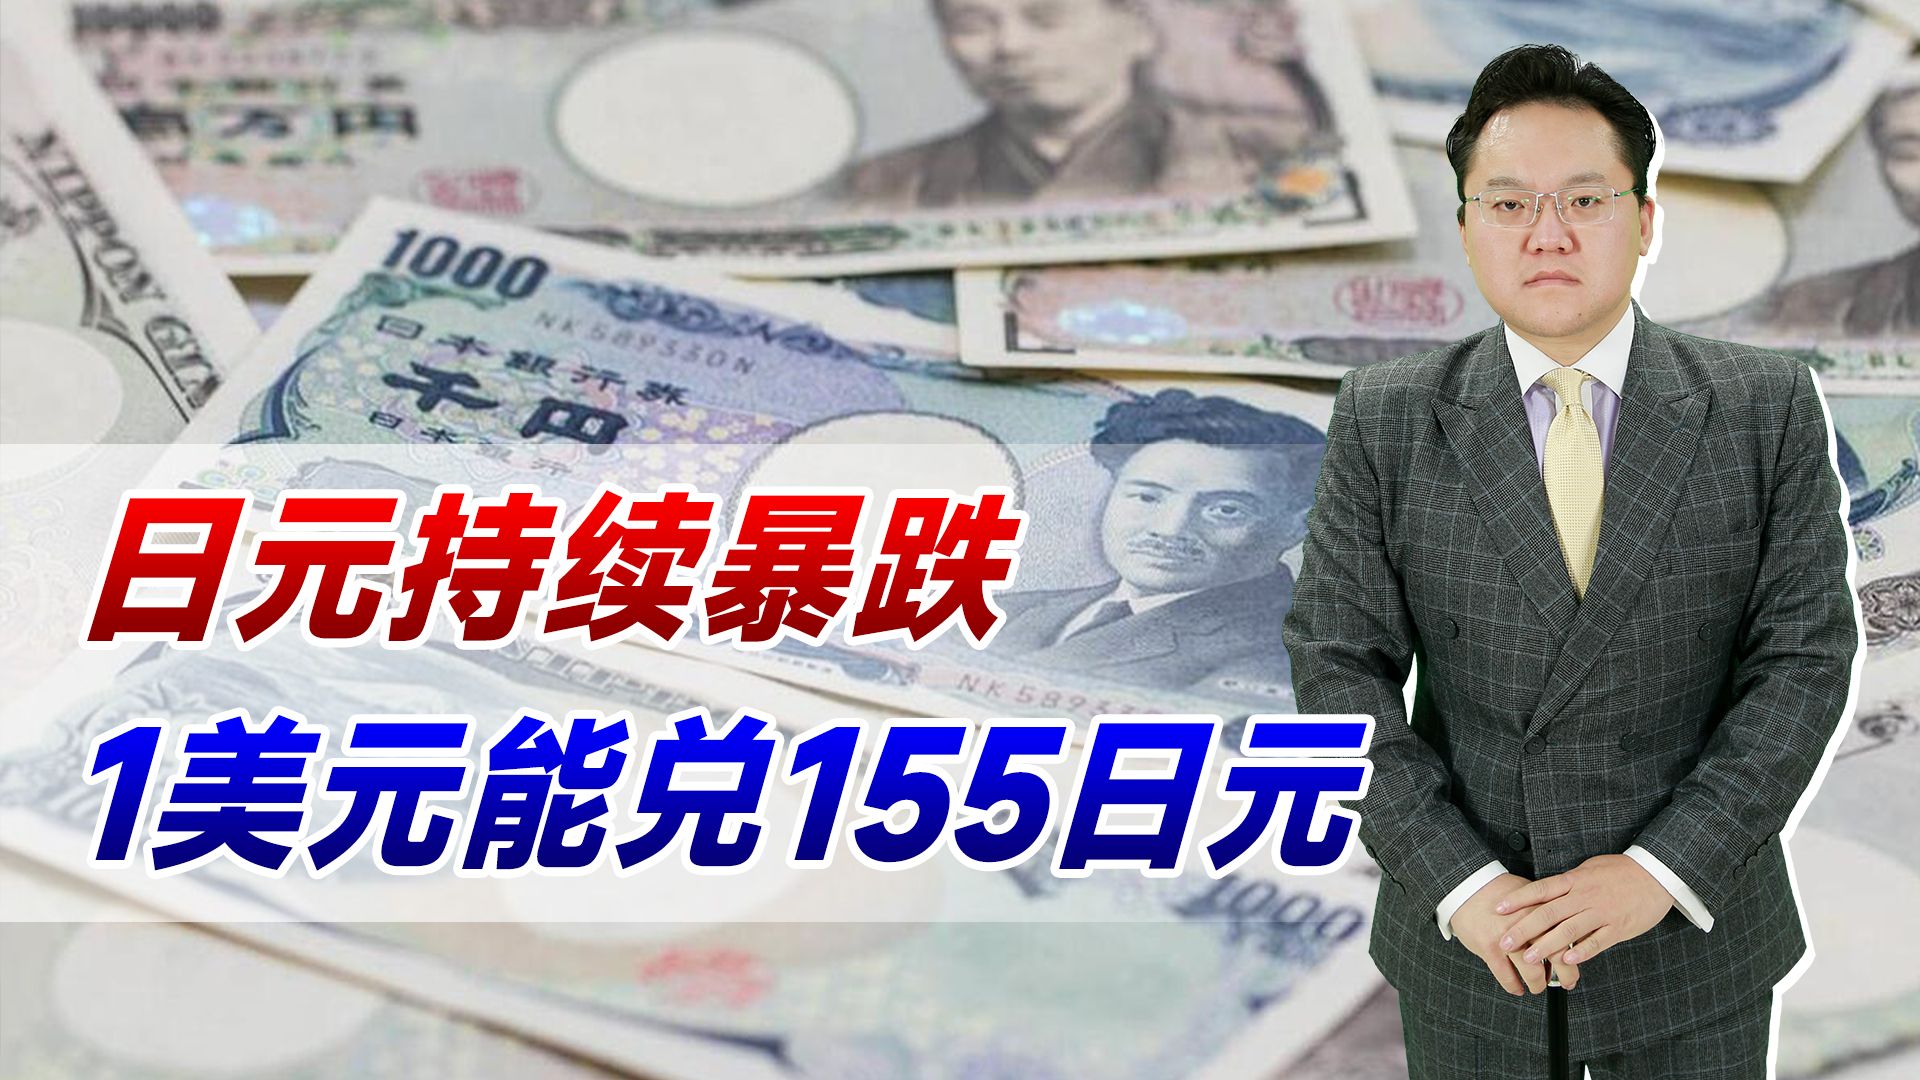 【照理说事】日元持续暴跌！1美元能兑155日元，日本百姓的日子越来越苦了